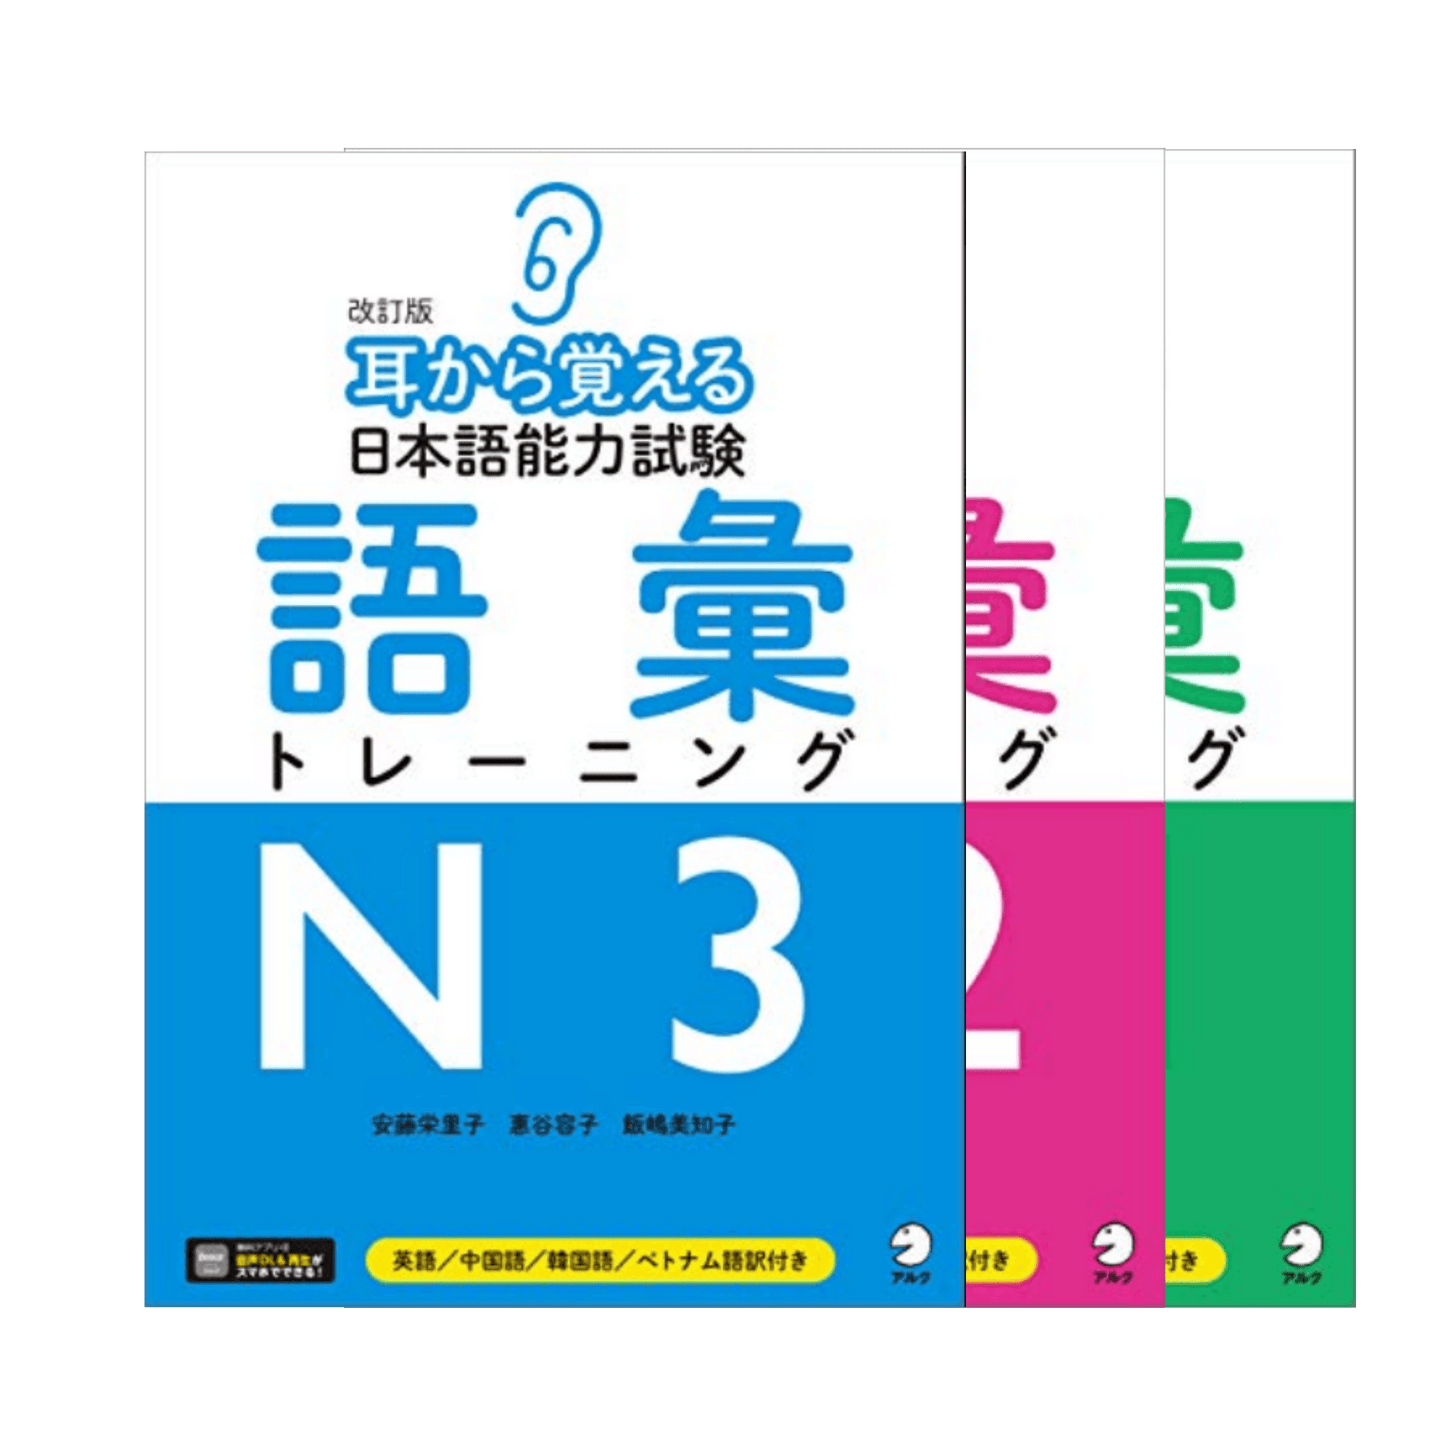 Manuale giapponese | Mimi Kara Oboeru Nihongo Nōryoku Shiken: Vocabolario ChitoroShop